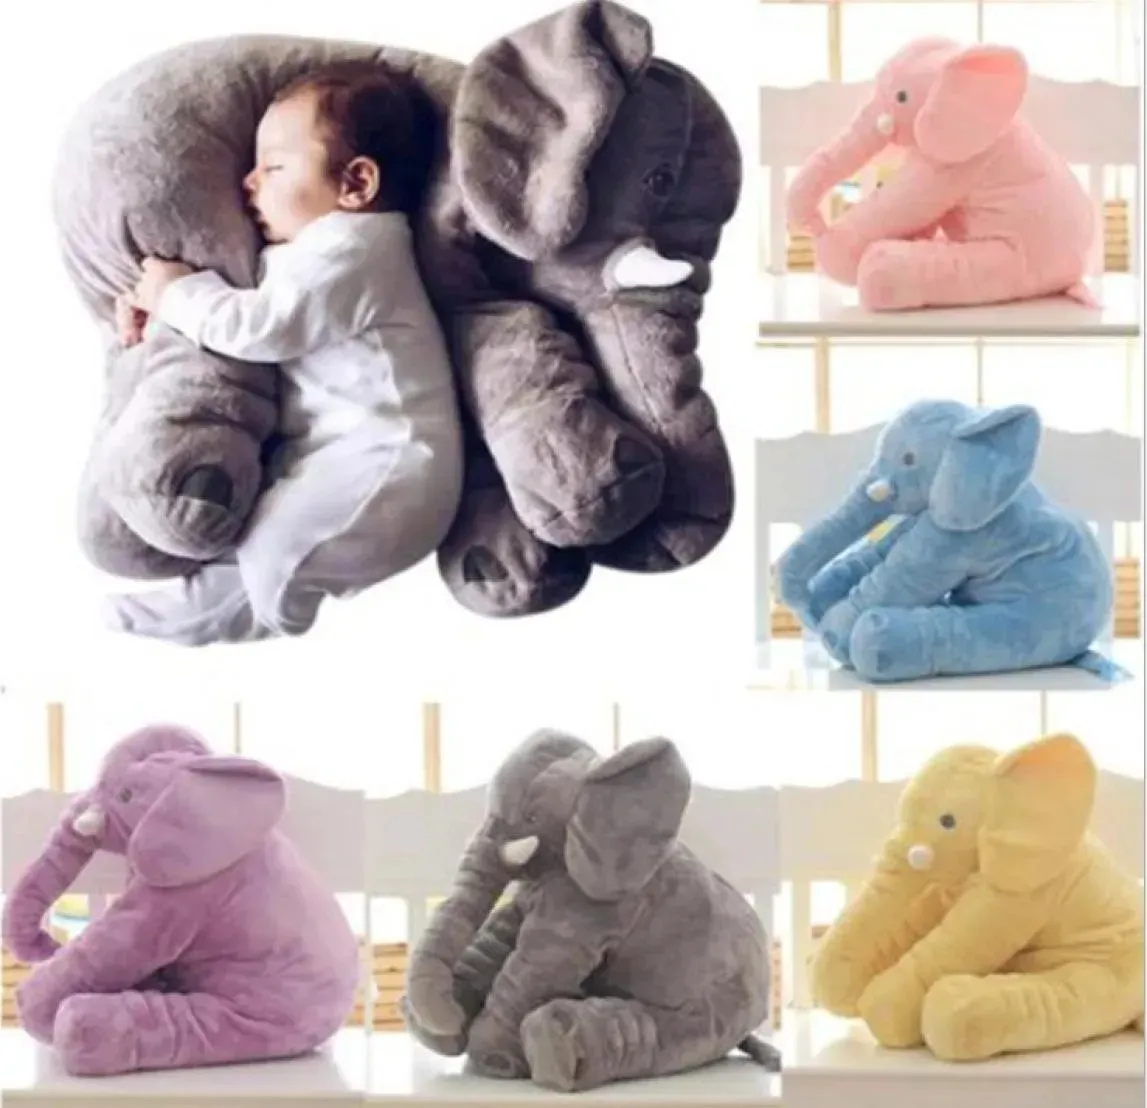 40 см плюшевая кукла-слон, игрушка для детей, подушка для сна, милая мягкая подушка со слоном, кукла, подарок на день рождения